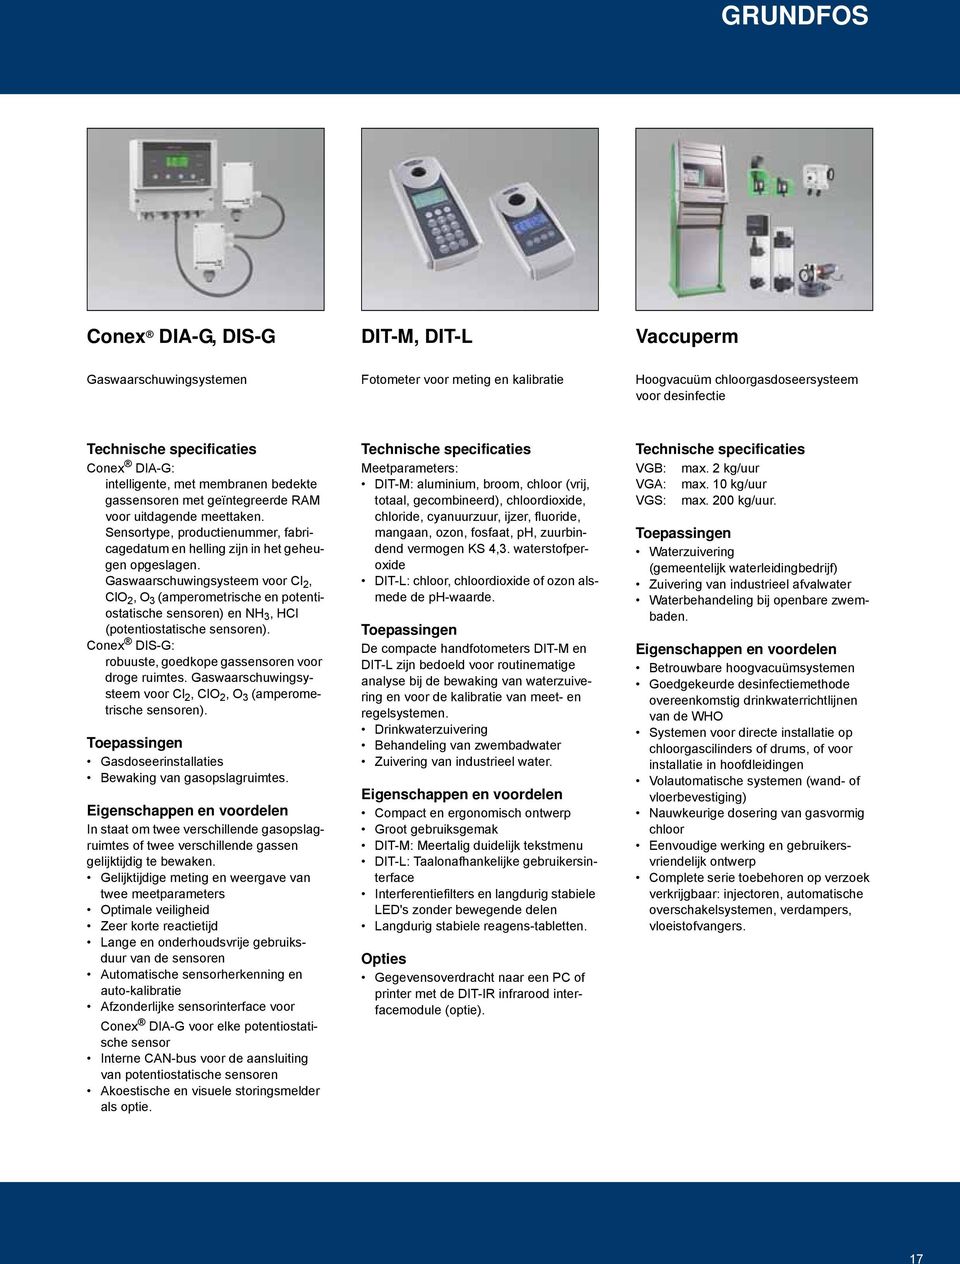 Gaswaarschuwingsysteem voor Cl 2, ClO 2, O 3 (amperometrische en potentiostatische sensoren) en NH 3, HCl (potentiostatische sensoren). Conex DIS-G: robuuste, goedkope gassensoren voor droge ruimtes.